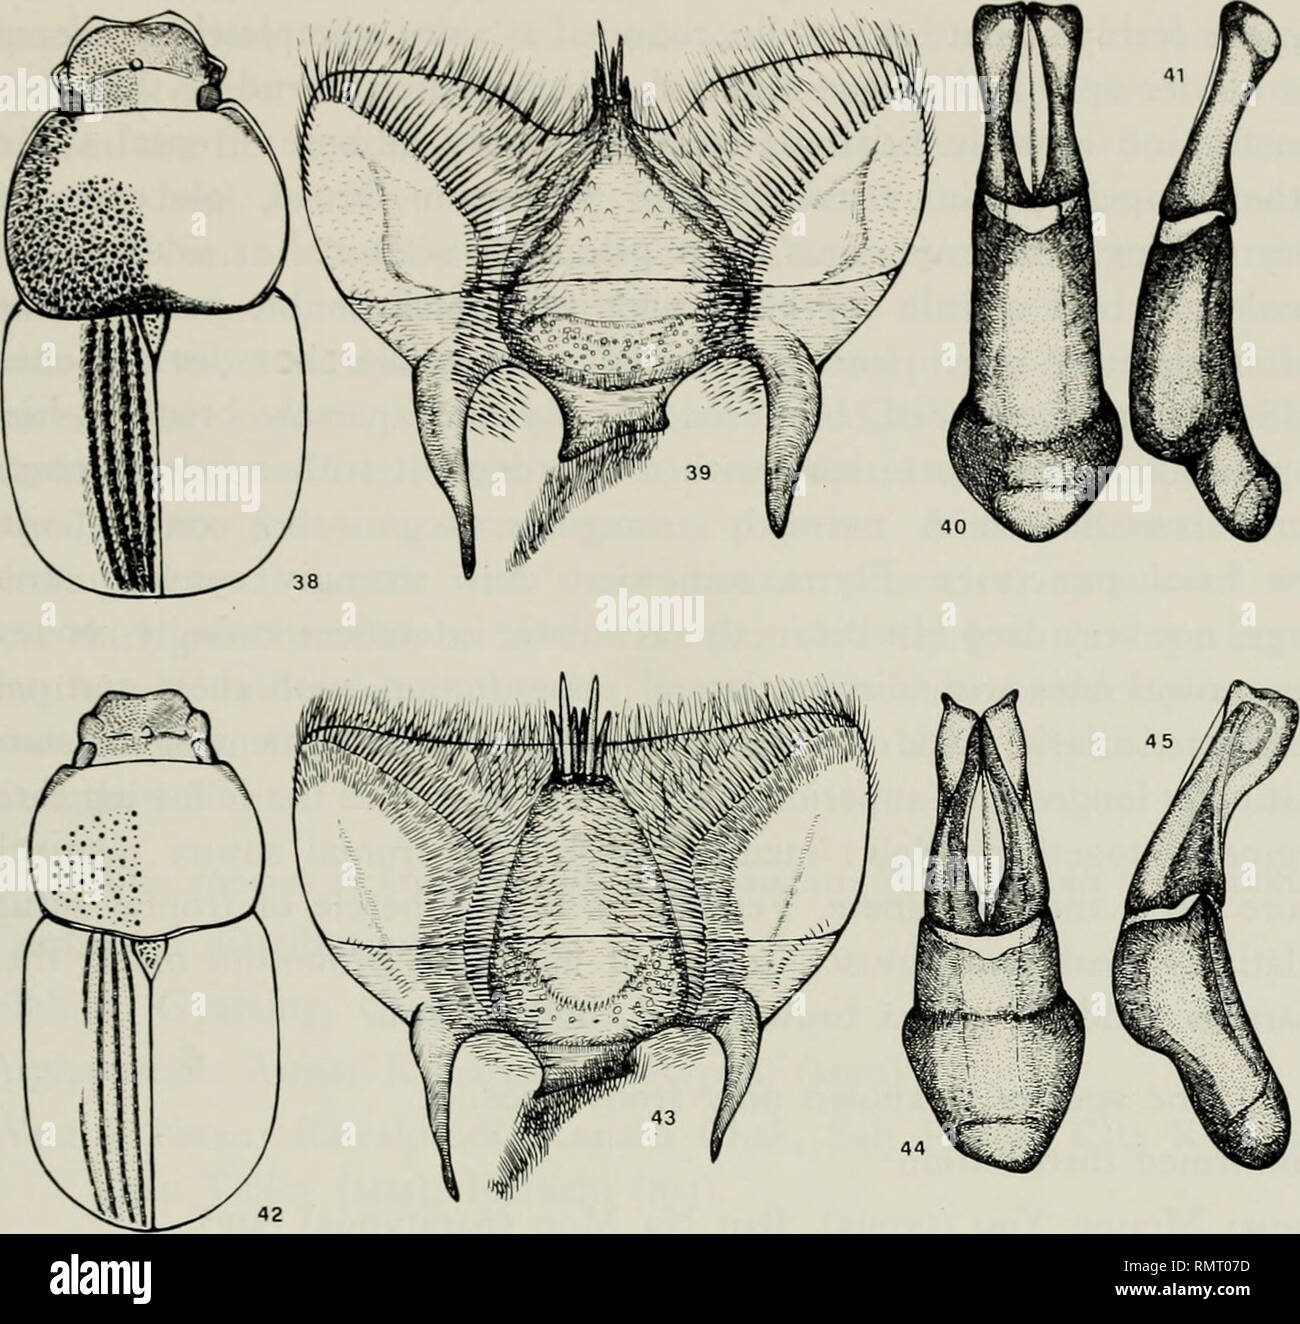 . Annali del Museo civico di storia naturale Giacomo Doria. Natural history. APHODIINAE 261. Habitus, epipharynx and aedeagus of: Figs. 38-41: Aphodius punctatissitnus Bouc. (Ban Na Mon, Laos) - Figs. 42-45: A- phodhis auriculatus A. Schm. (Usambara, Burundi). Aphodius punctatissimus Bouc. (figs.: 38-41) 1921. Aphodius [Loboparius) punctatissimus Boucomont in: Boucomont &amp; Gillet, Faune ent. Ind. Fran^., Scarab.: 62. Locus typicus: Muong You (Laos). Brevis, valde convexus, parum nitidiis. Pronoto elytrisque nigro- piceis, puis flaz'is erectis brevis vestitis. Clypeo leviter sinuato, laterih Stock Photo